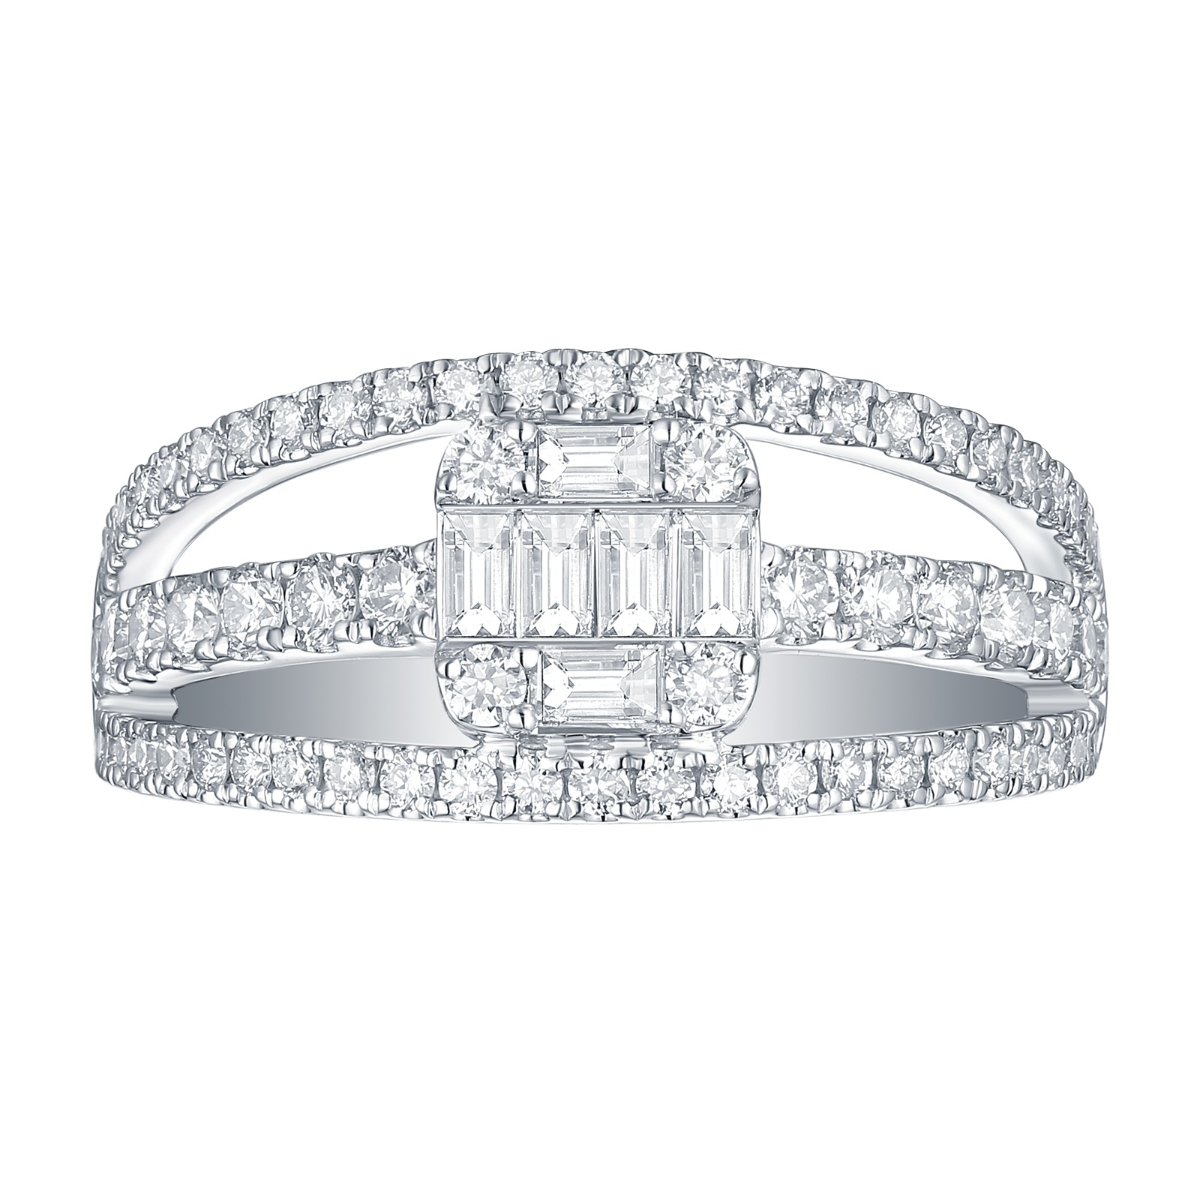 R34870WHT – 18K White Gold Diamond Ring, 0.98 TCW